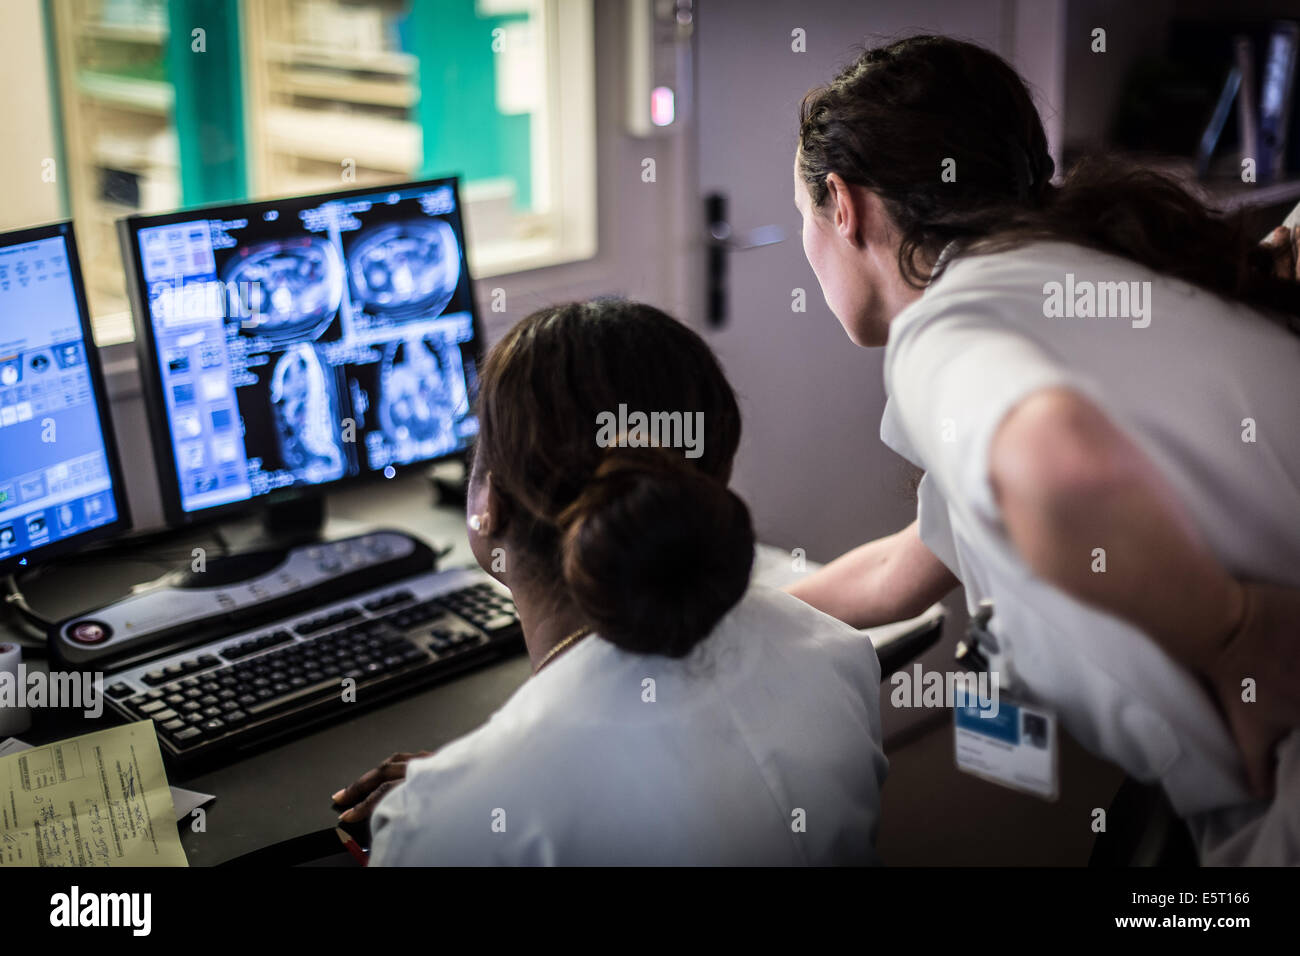 Des techniciens en radiologie l'étude TDM à l'hôpital Croix Saint Simon, Paris, France. Banque D'Images